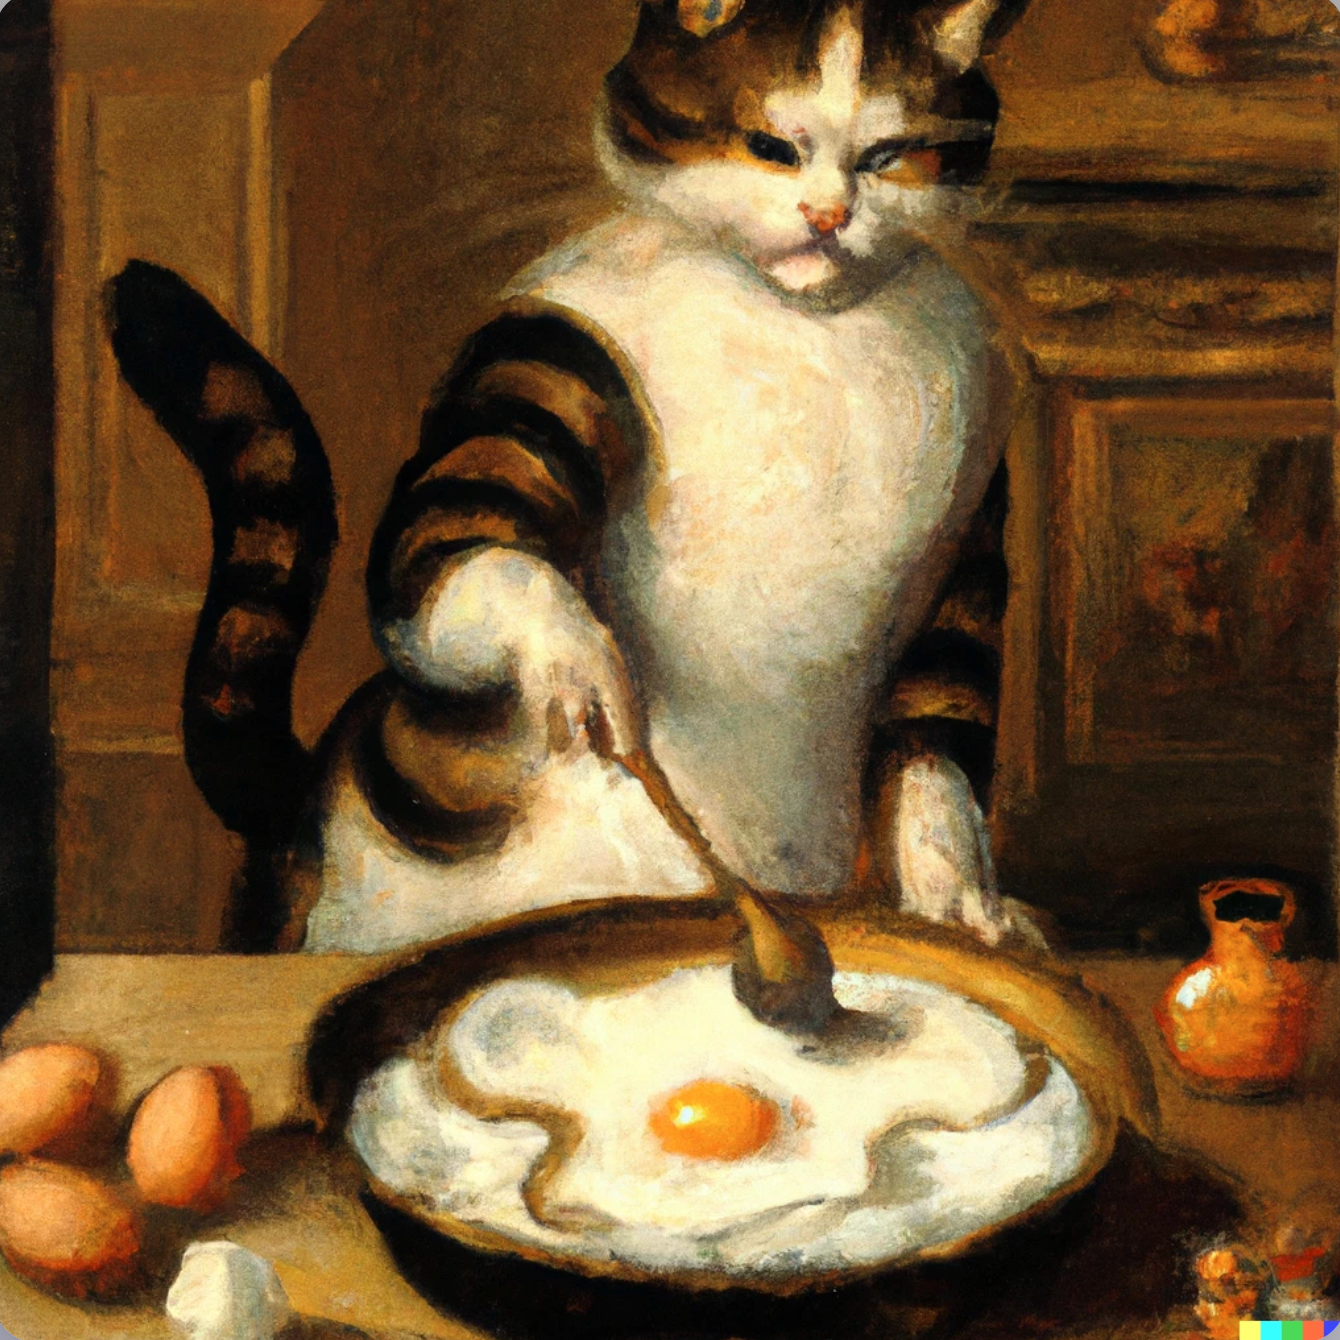 Cat cooking scrambled eggs